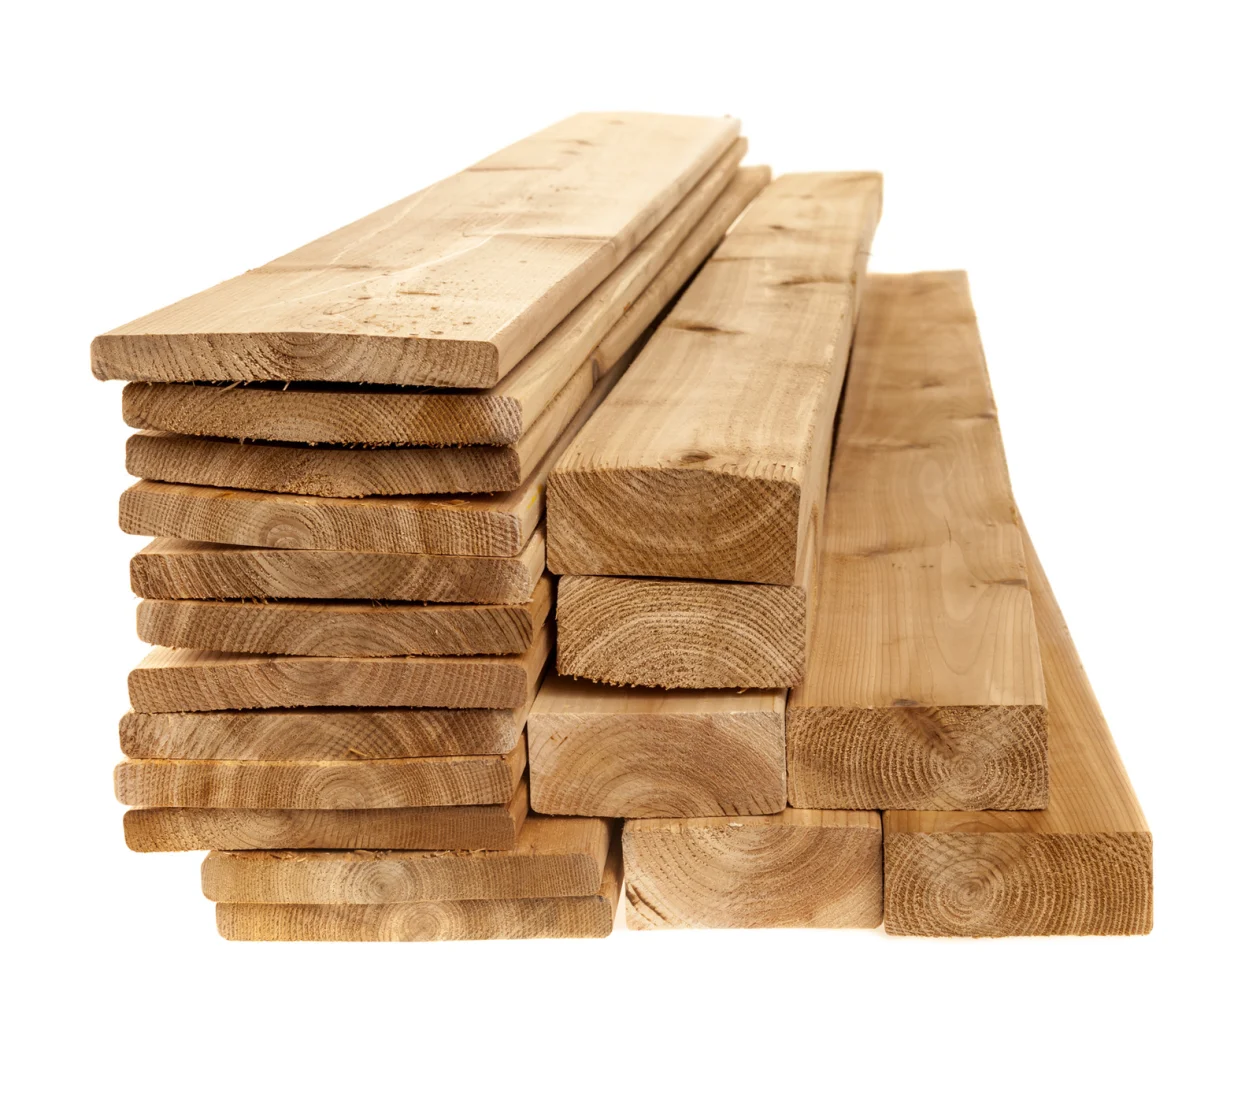 Dimensional Lumber (1600x1400)